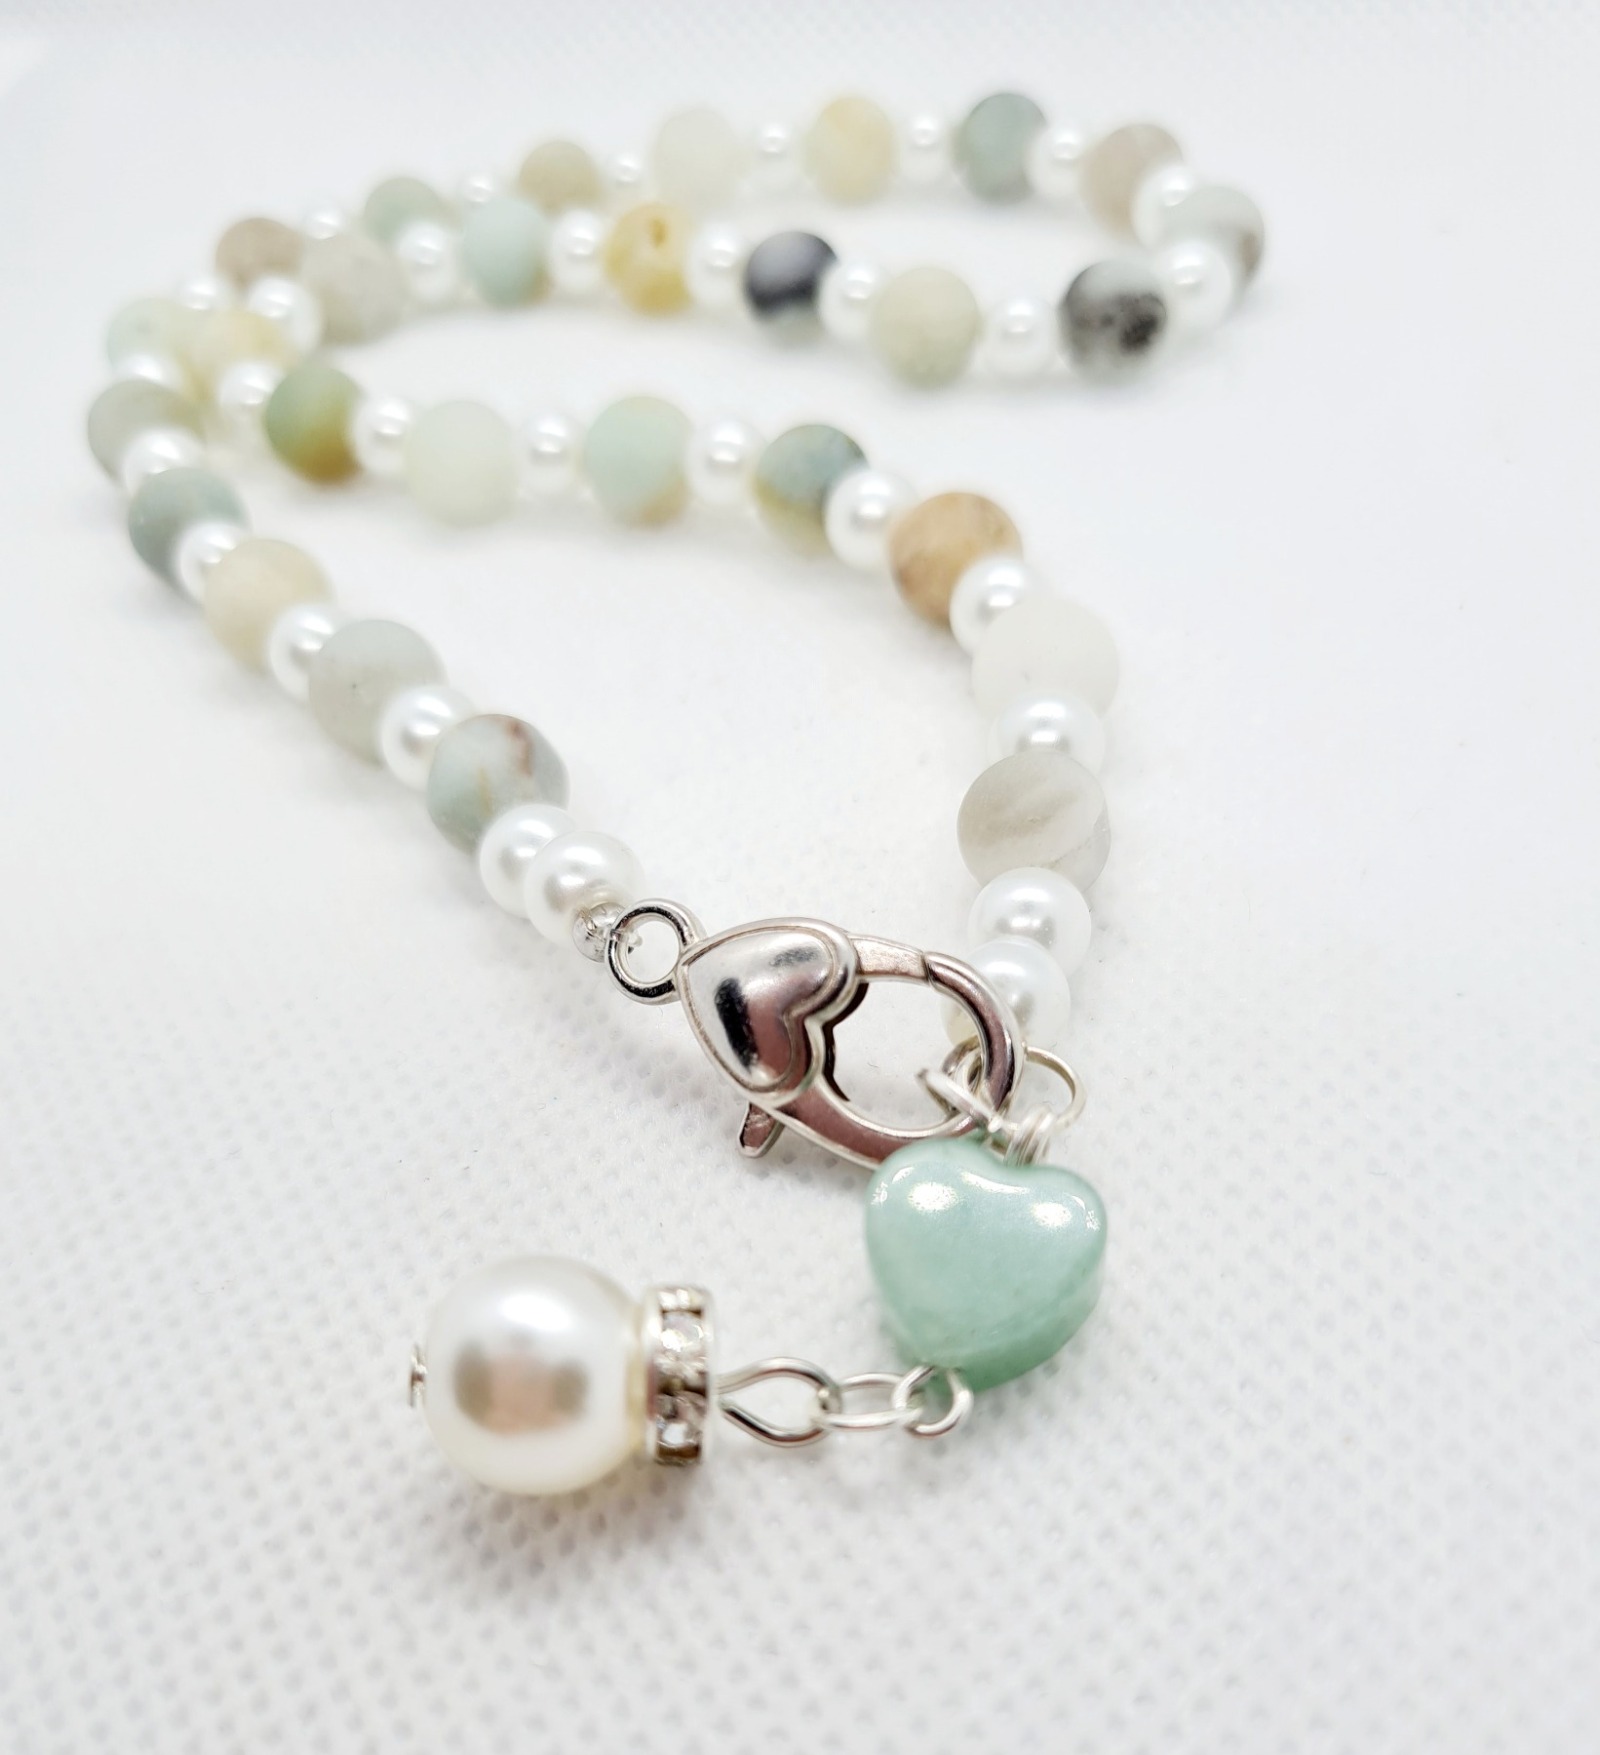 Frauen Schmuck Halskette Hummerklaue Naturstein Perlen 3